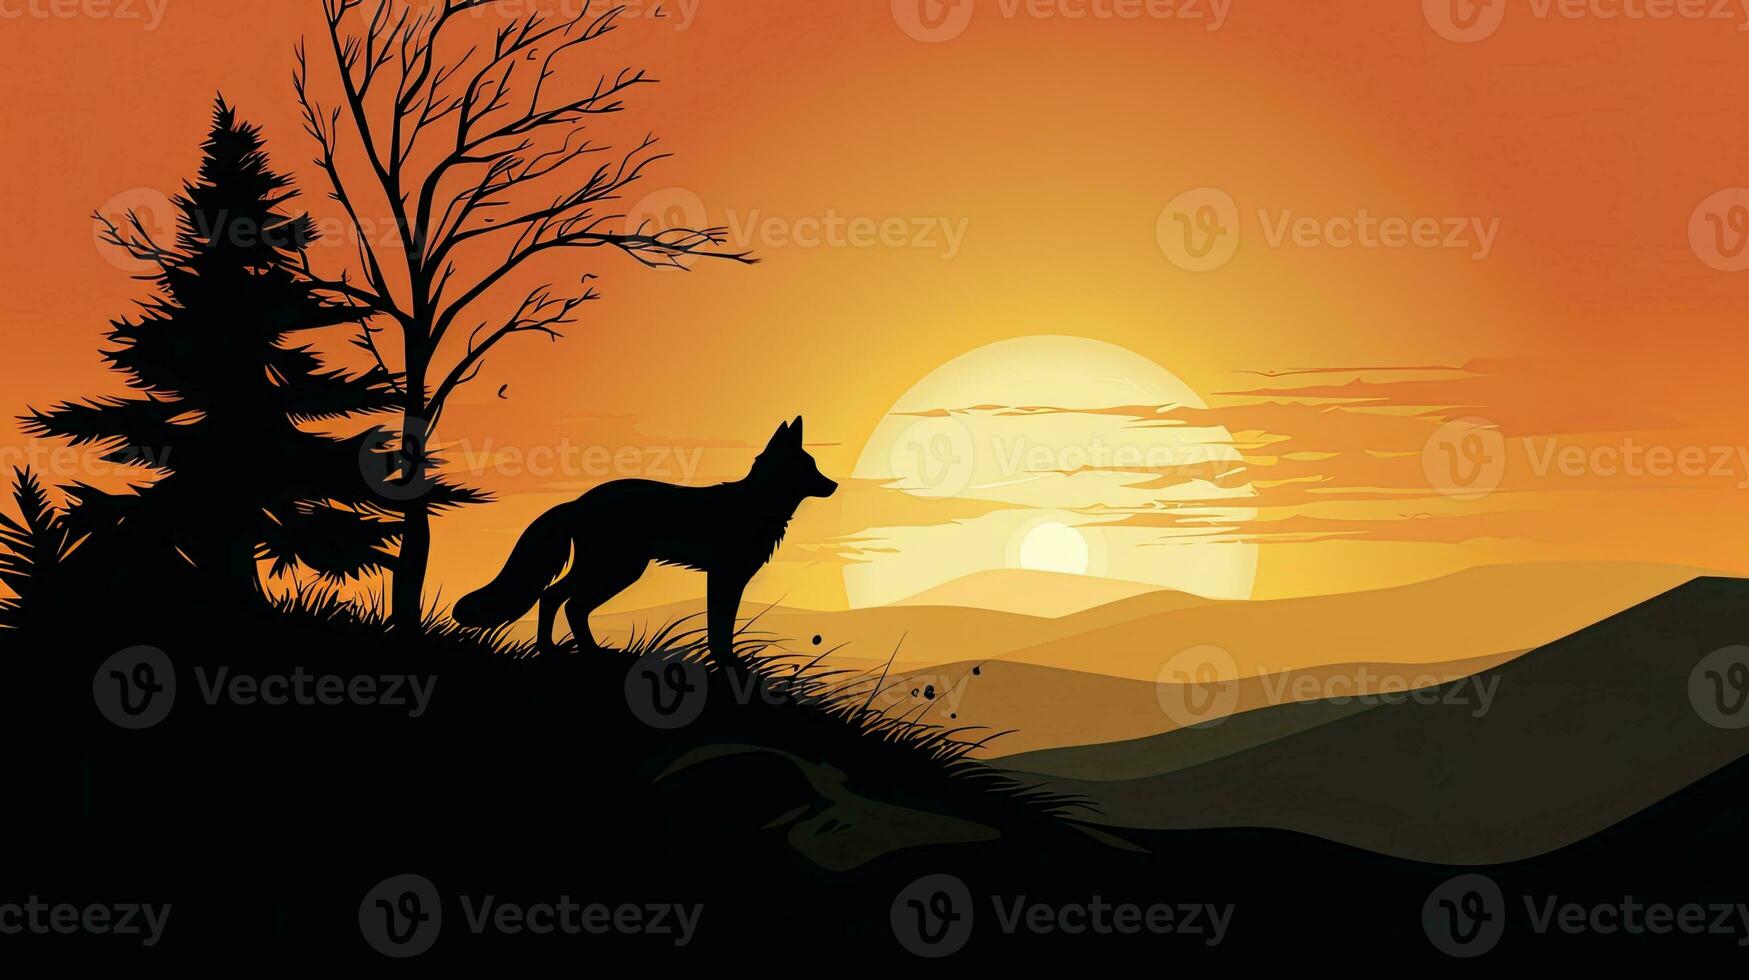 contorno de un zorro en un colina a amanecer foto